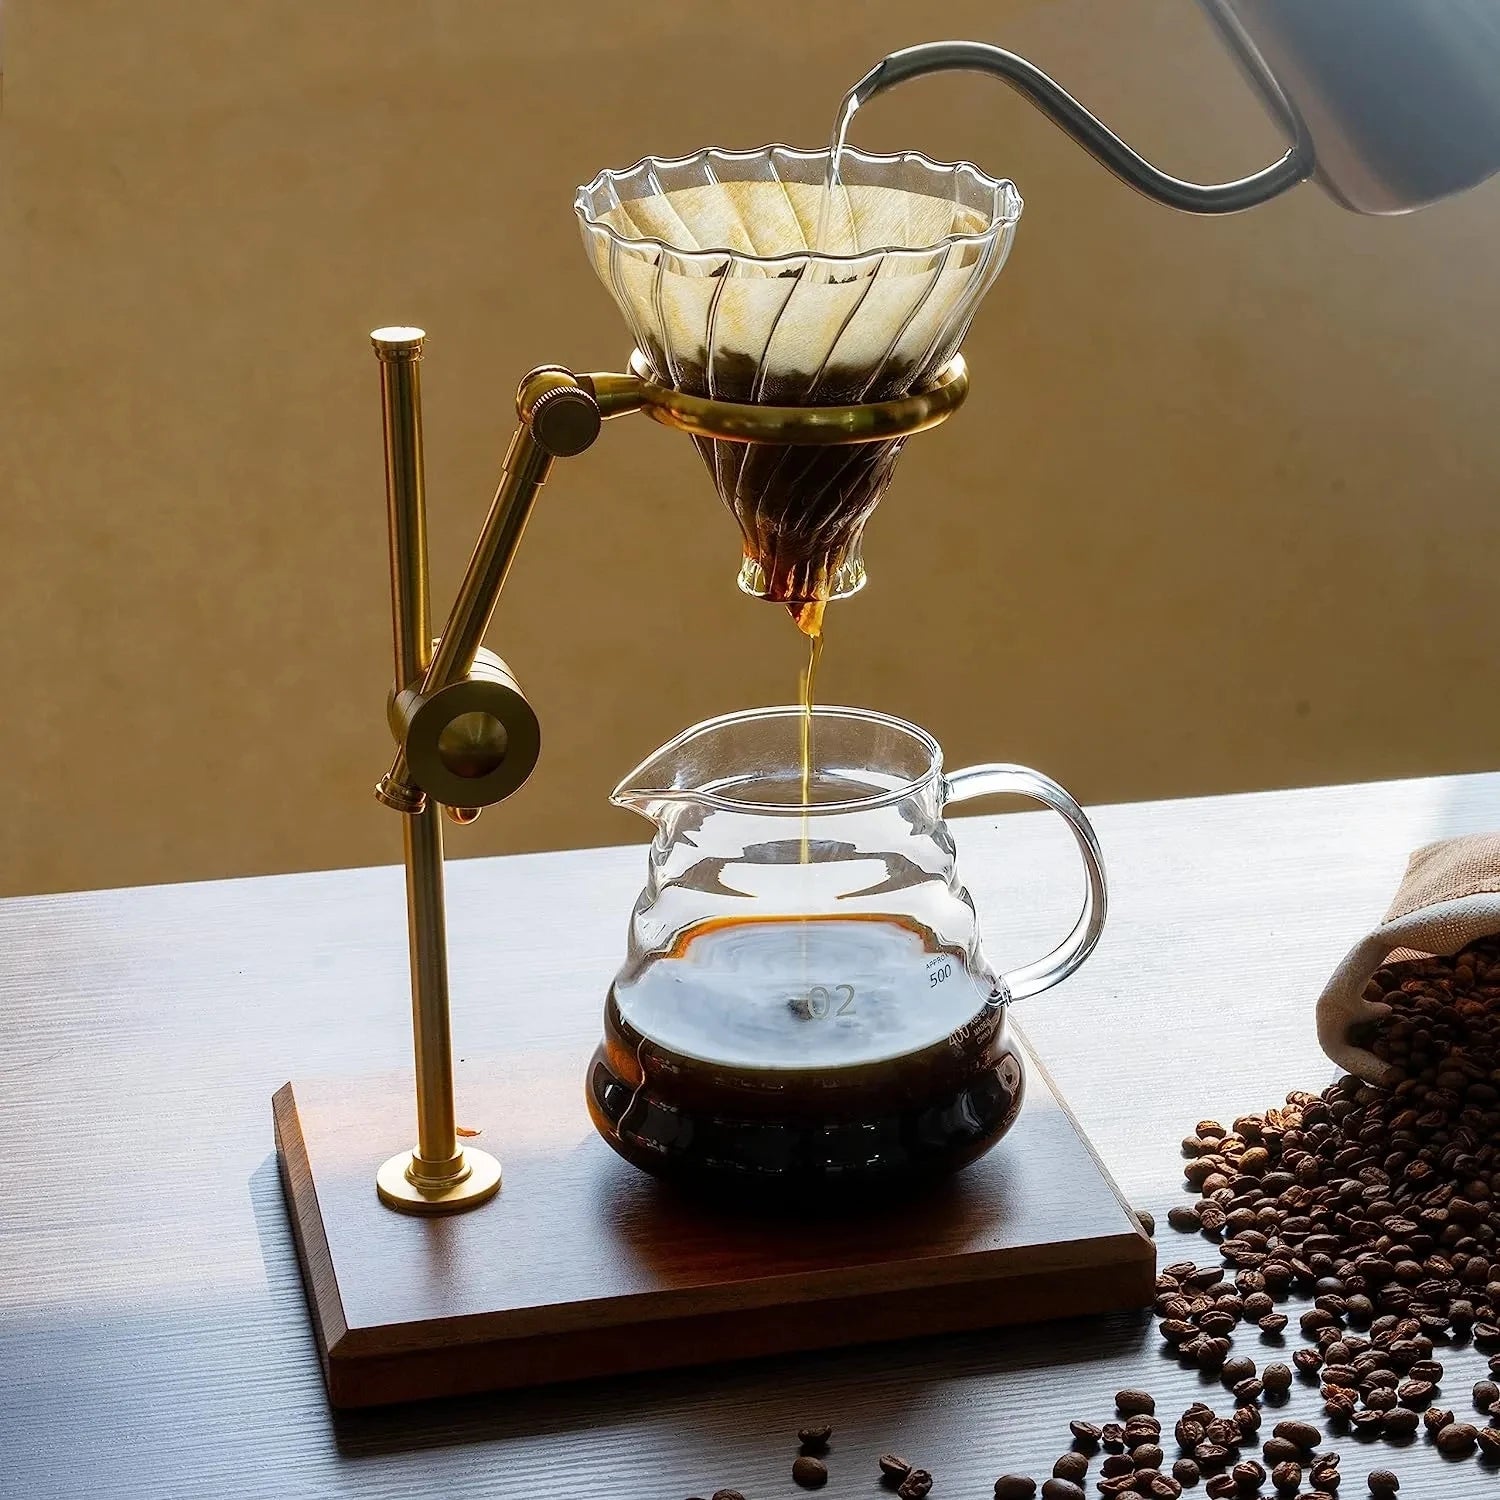 Tuangkan di atas pembuat kopi set dengan stainless steel stand 600ml glass care dengan dripper kopi kaca/filter tetesan kopi set